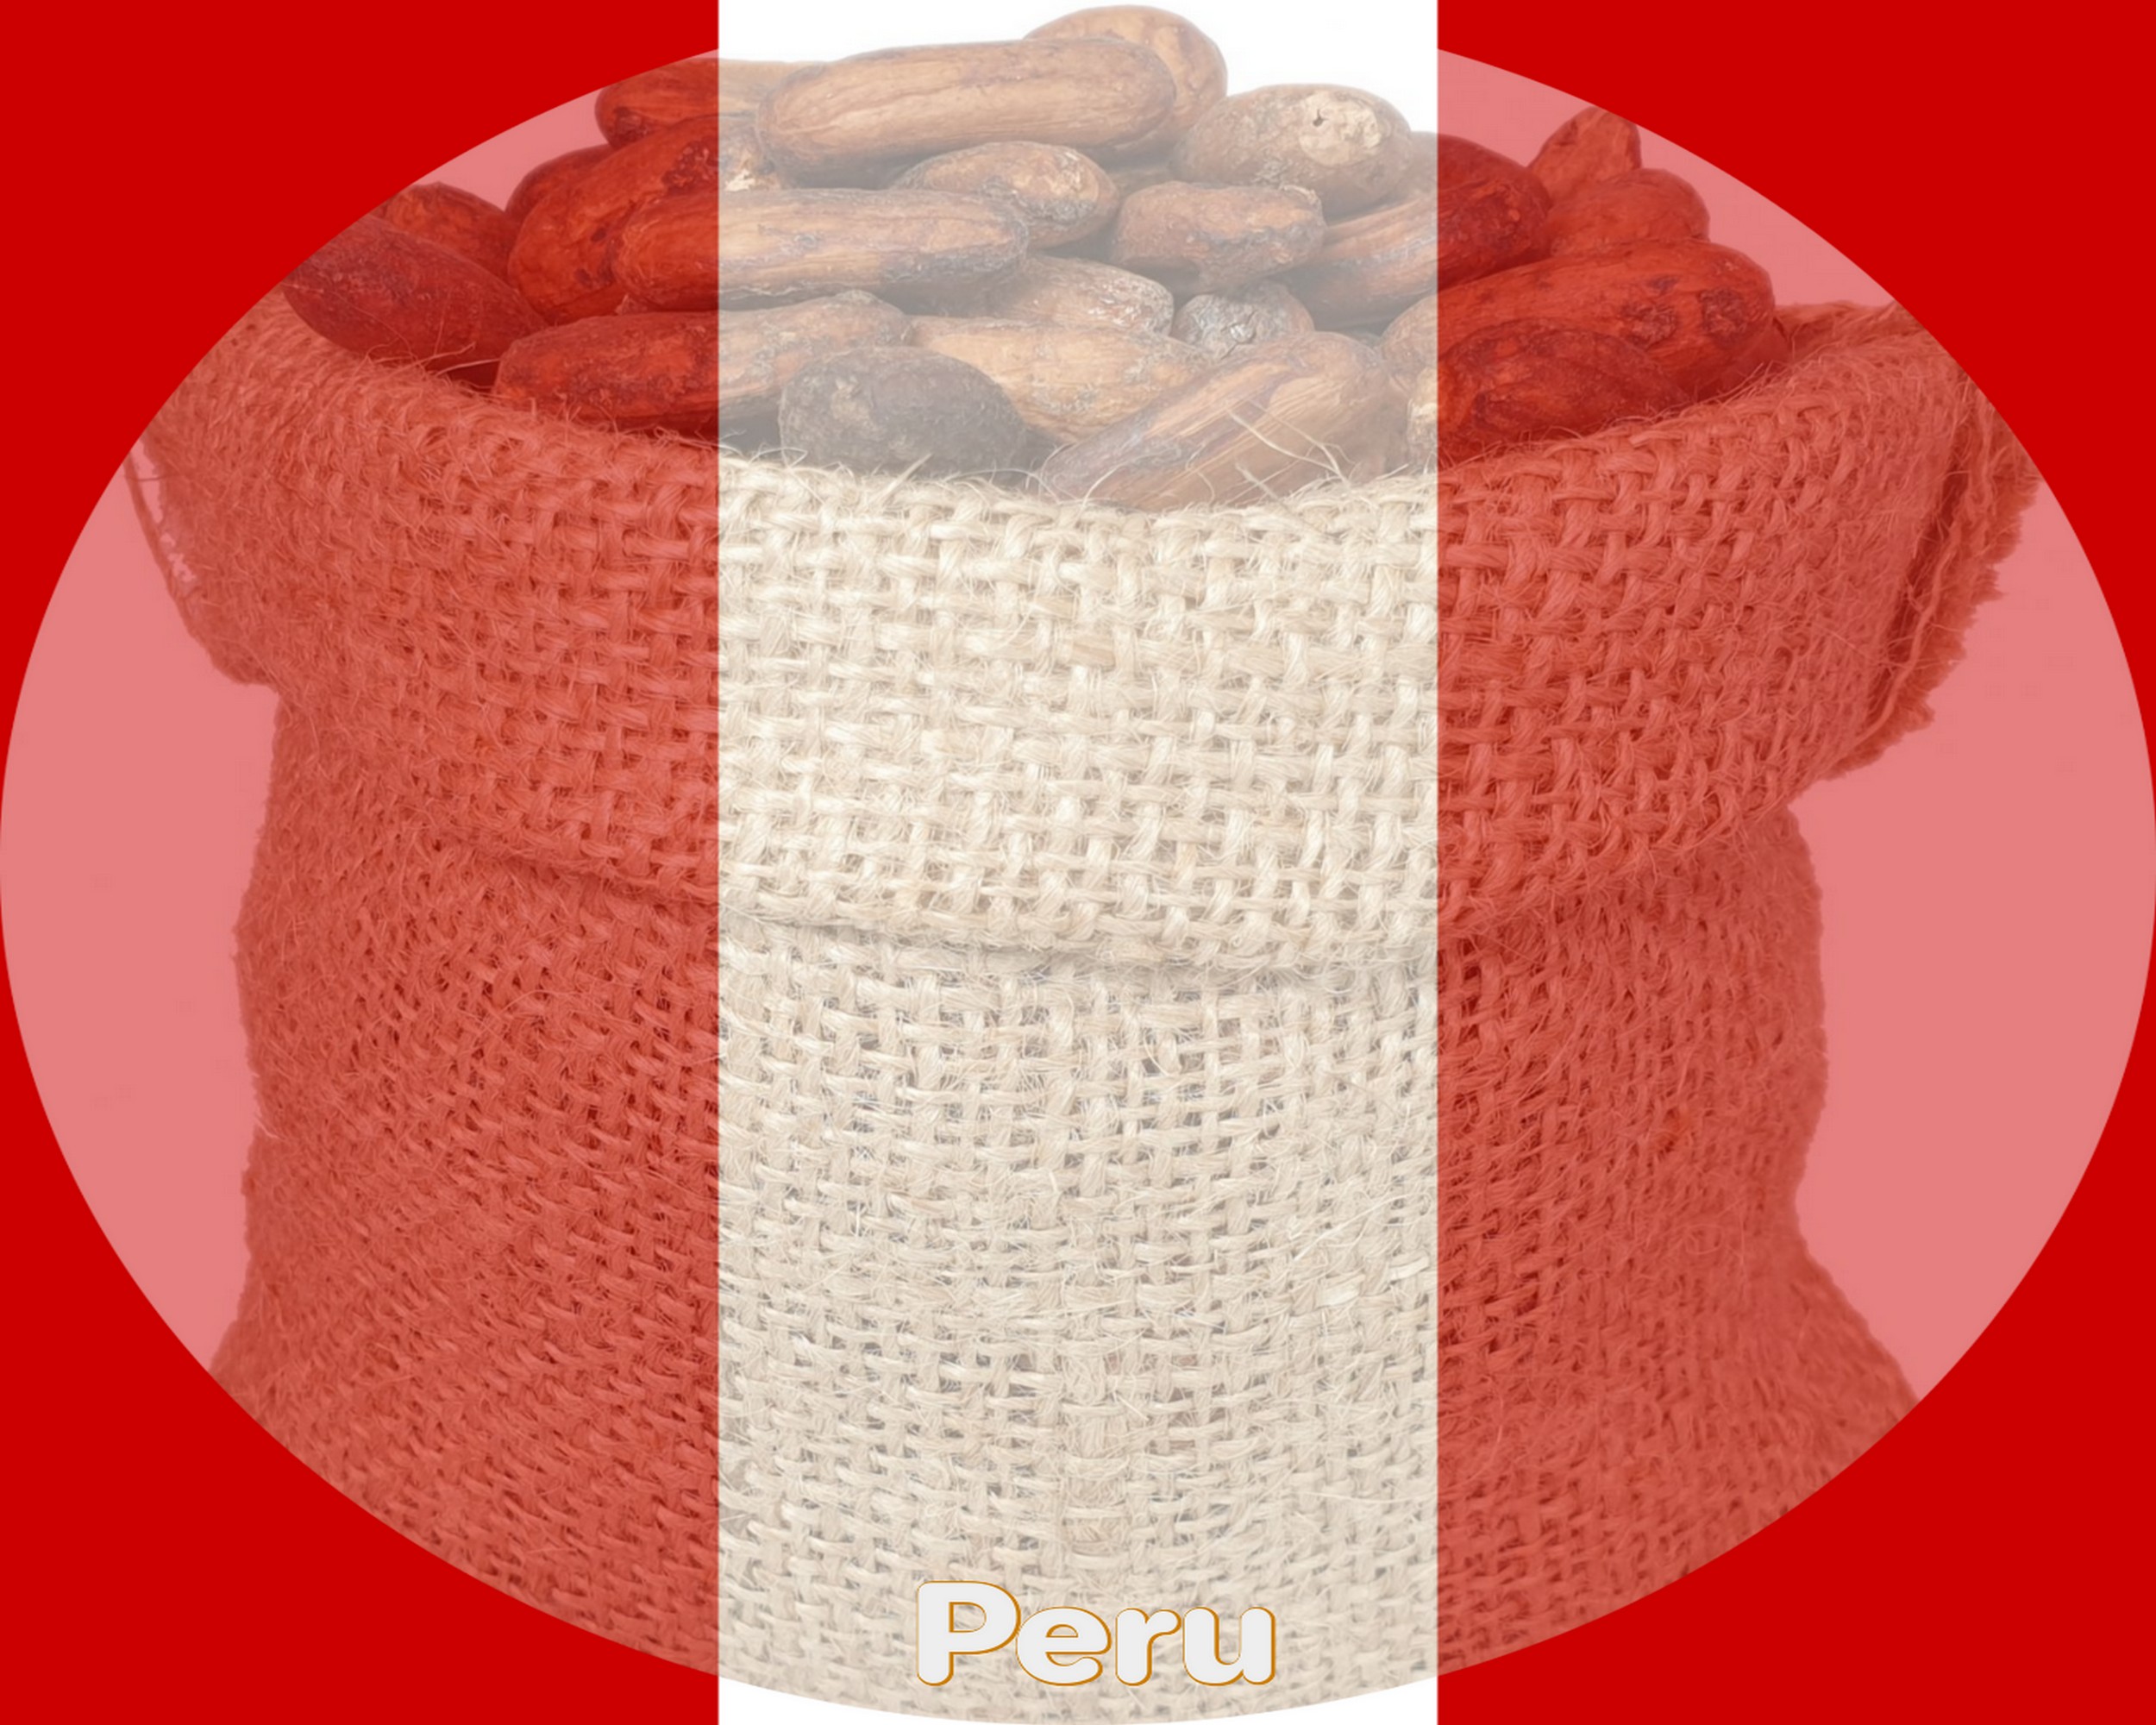 Peru Organic Cocoa Beans